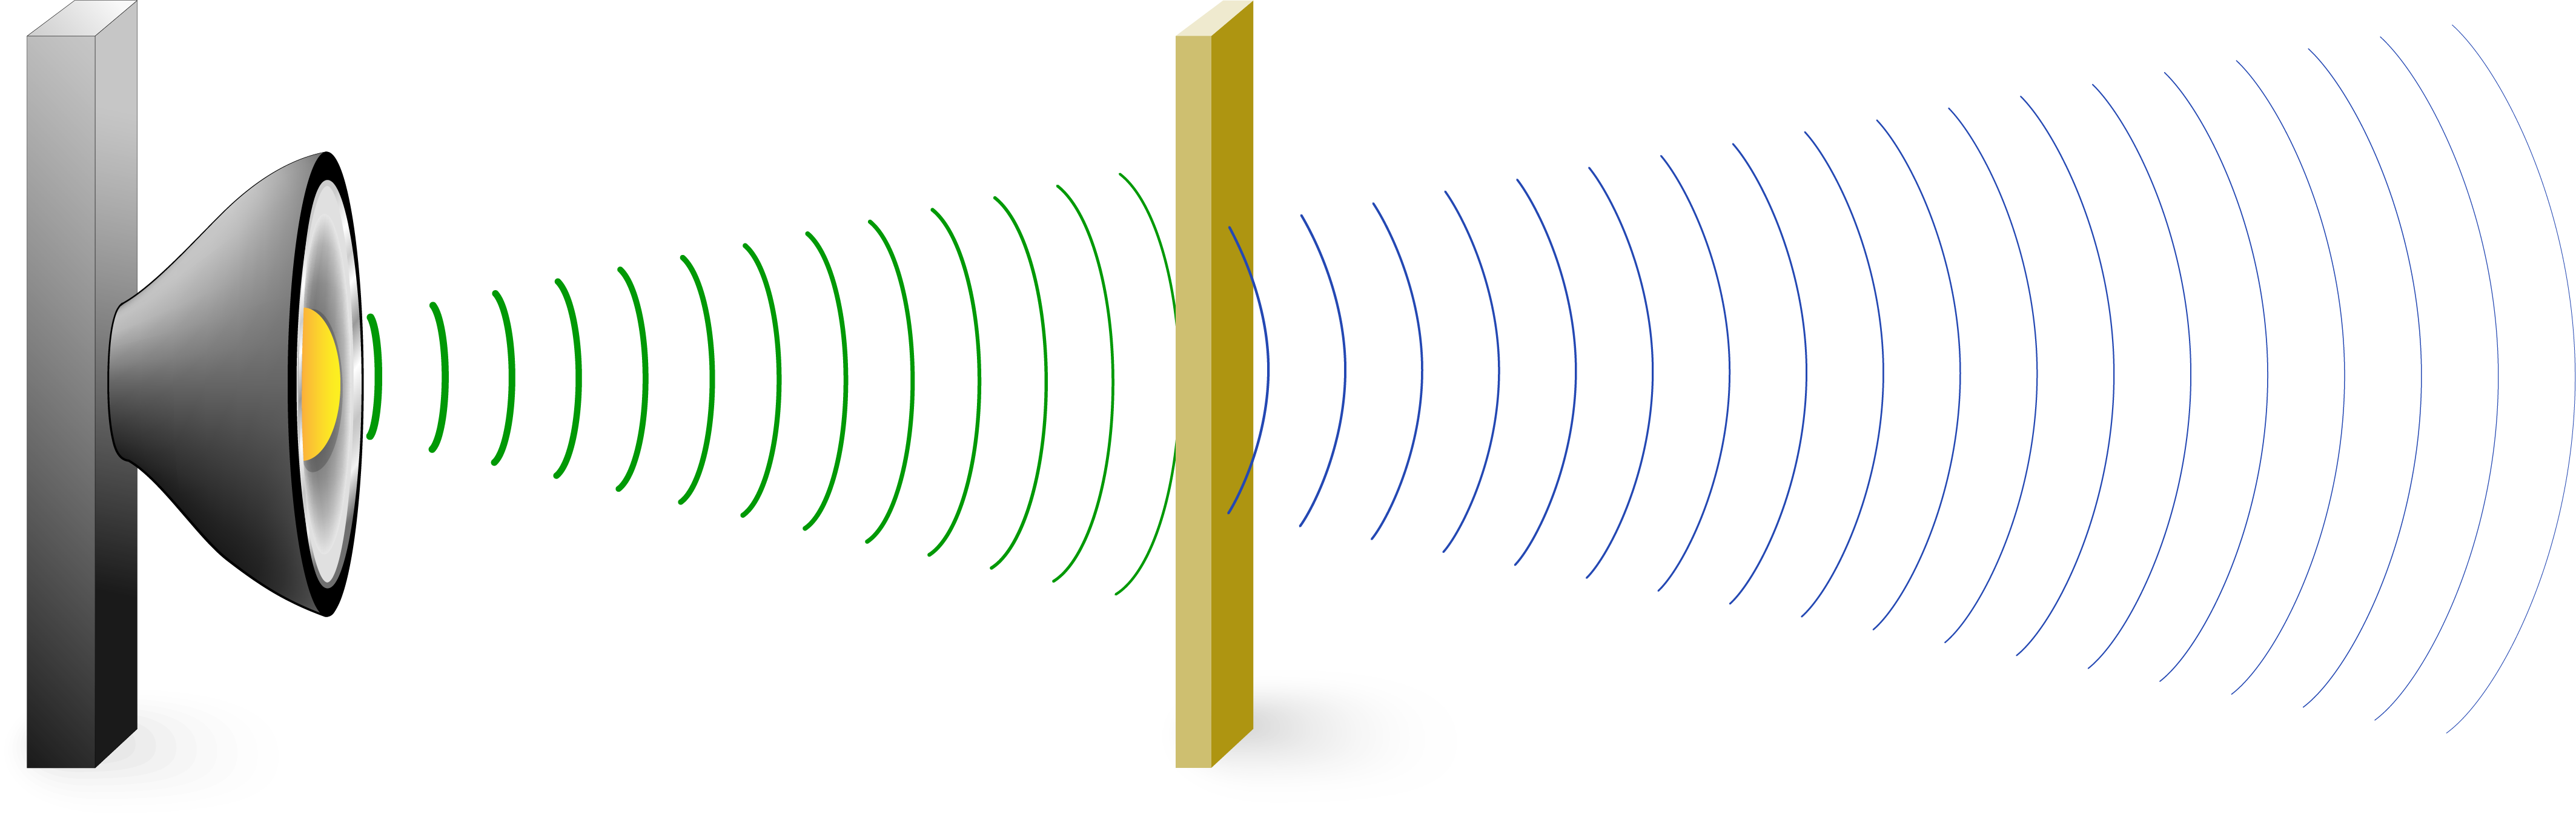 Ondas sonoras conducidas a través de una superficie que es buen conductor del sonido